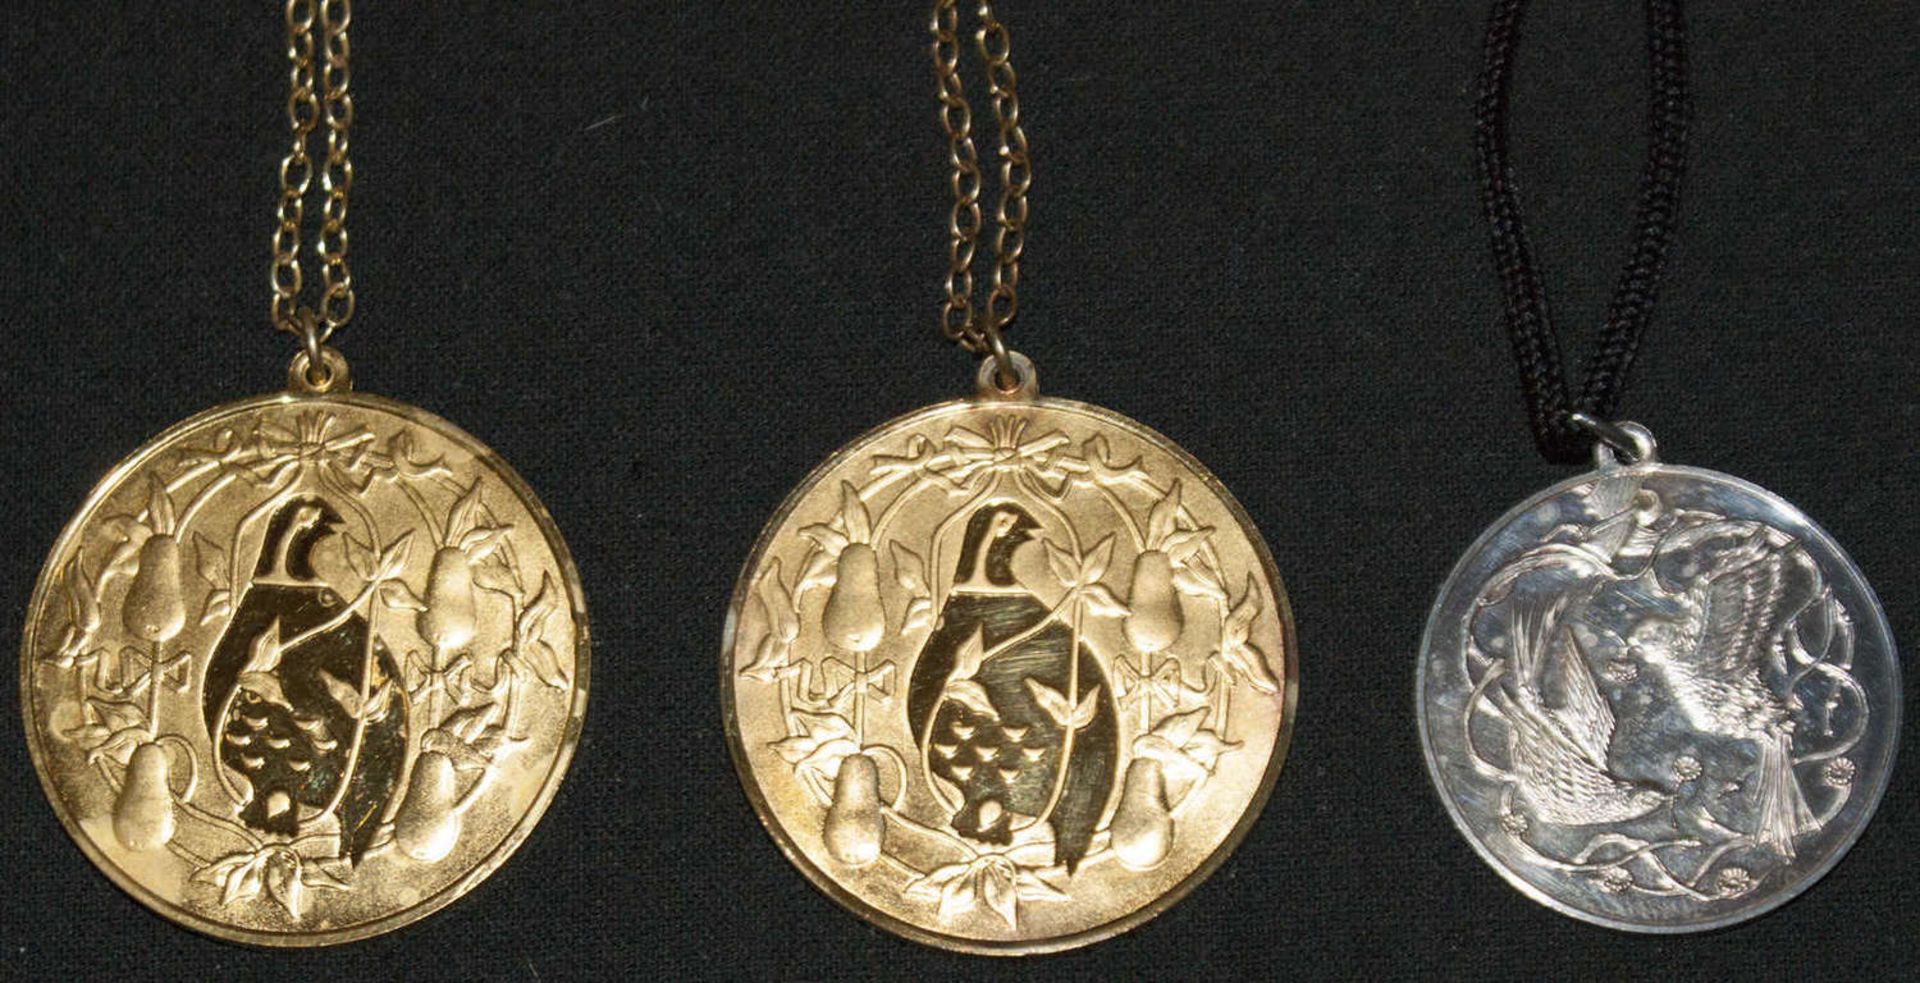 3 Medaillen der Liebe, alle 925er Silber an 925er Kette. 2x vergoldet3 medals of love, all 925